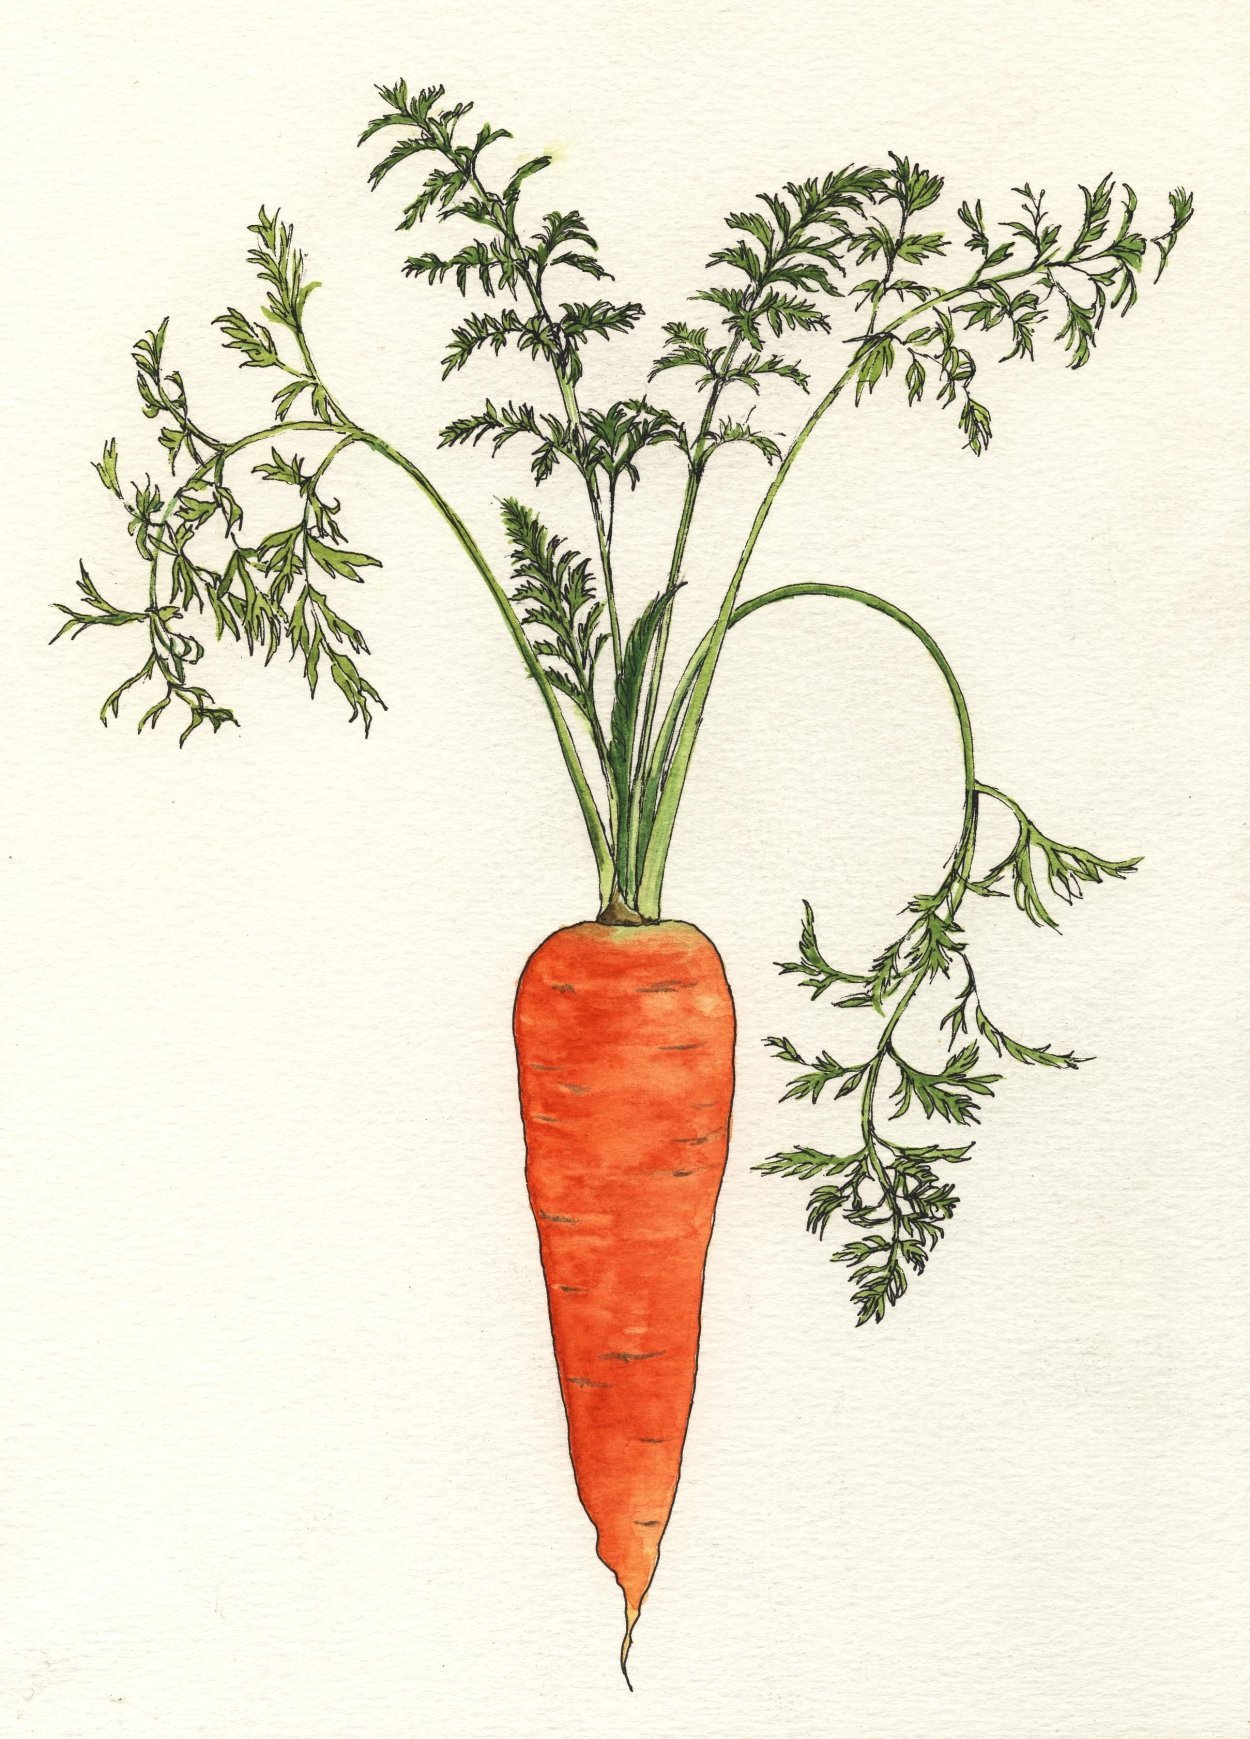 Класс растения морковь. Морковь с ботвой. Морковь посевная Dáucus satívus (Hoffm.) Roehl.. Корнеплод моркови. Морковь посевная двулетнее овощное растение.